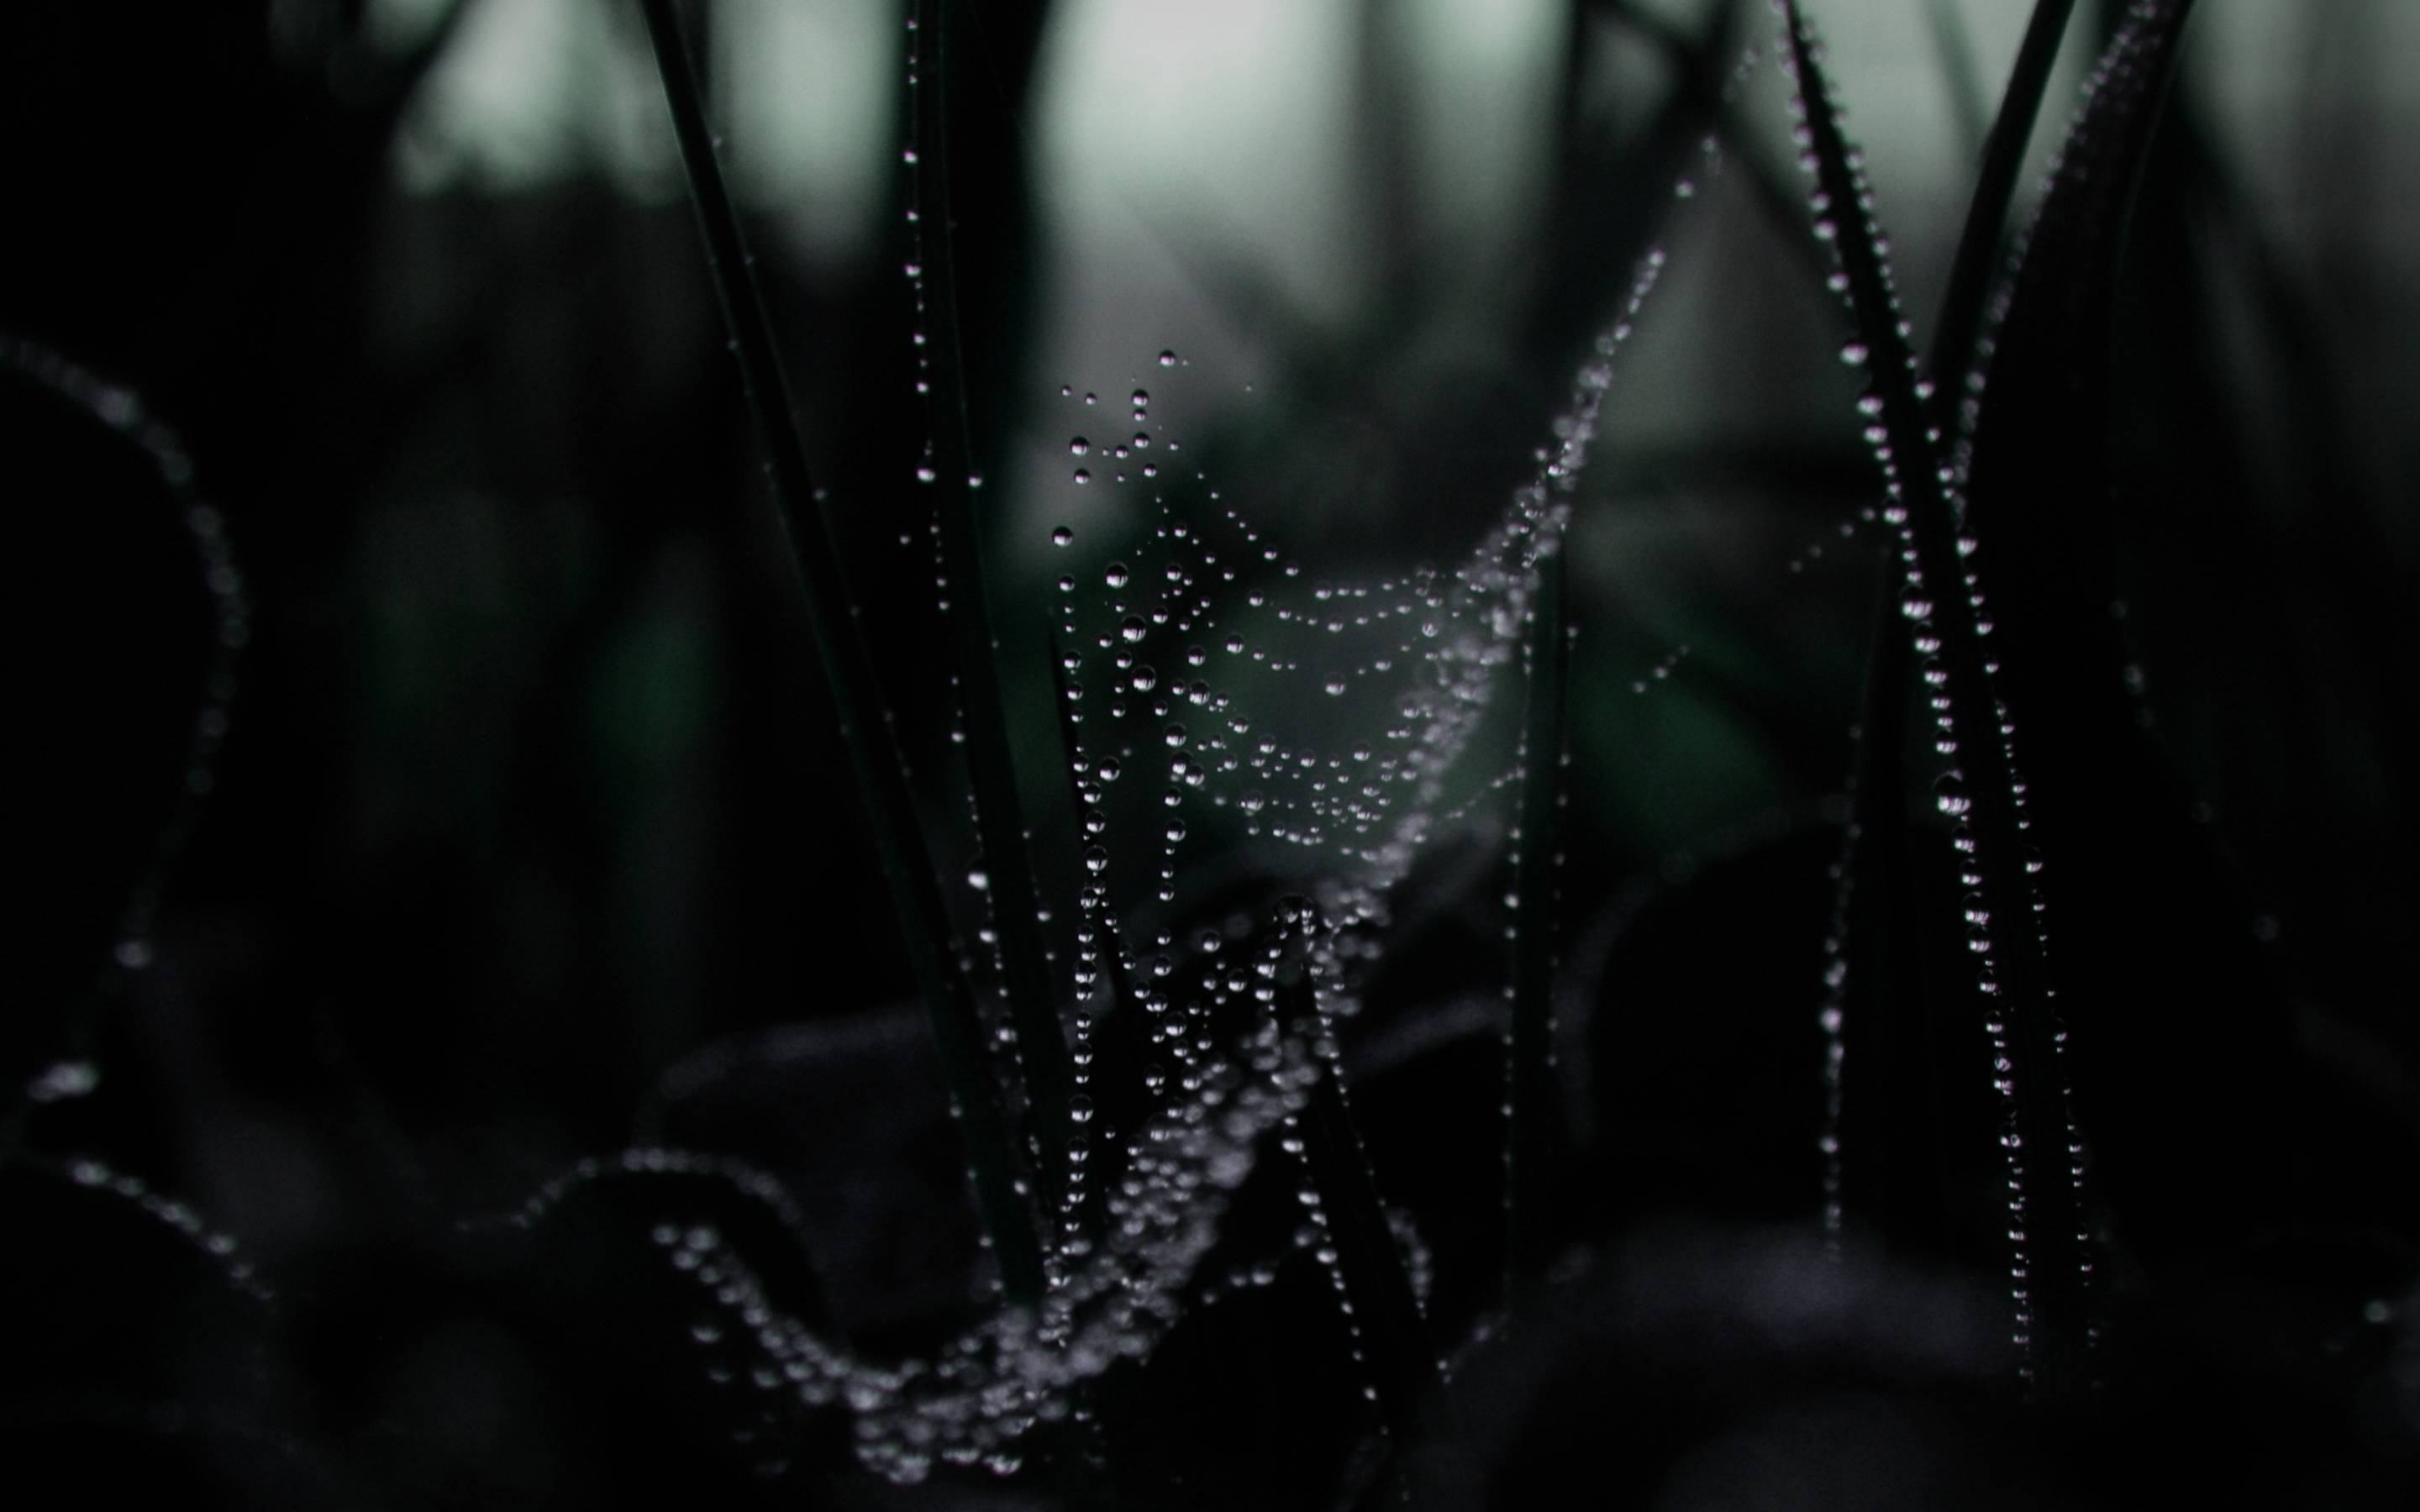 Dew On Spider web Retina MacBook Pro wallpapers